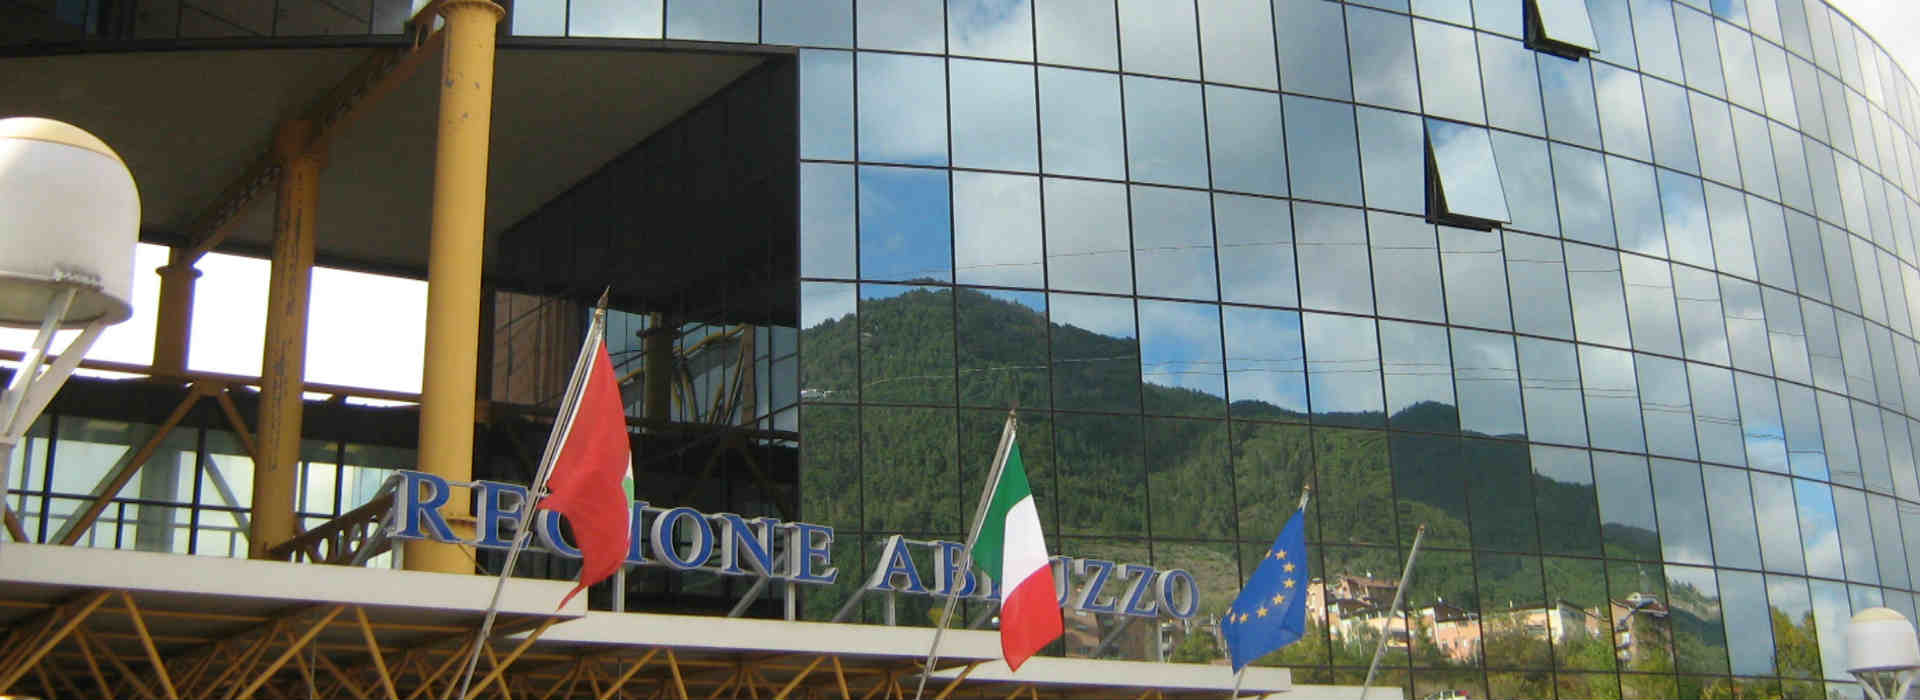 Coronavirus e Regione Abruzzo: quel milione e mezzo di euro "sparito"